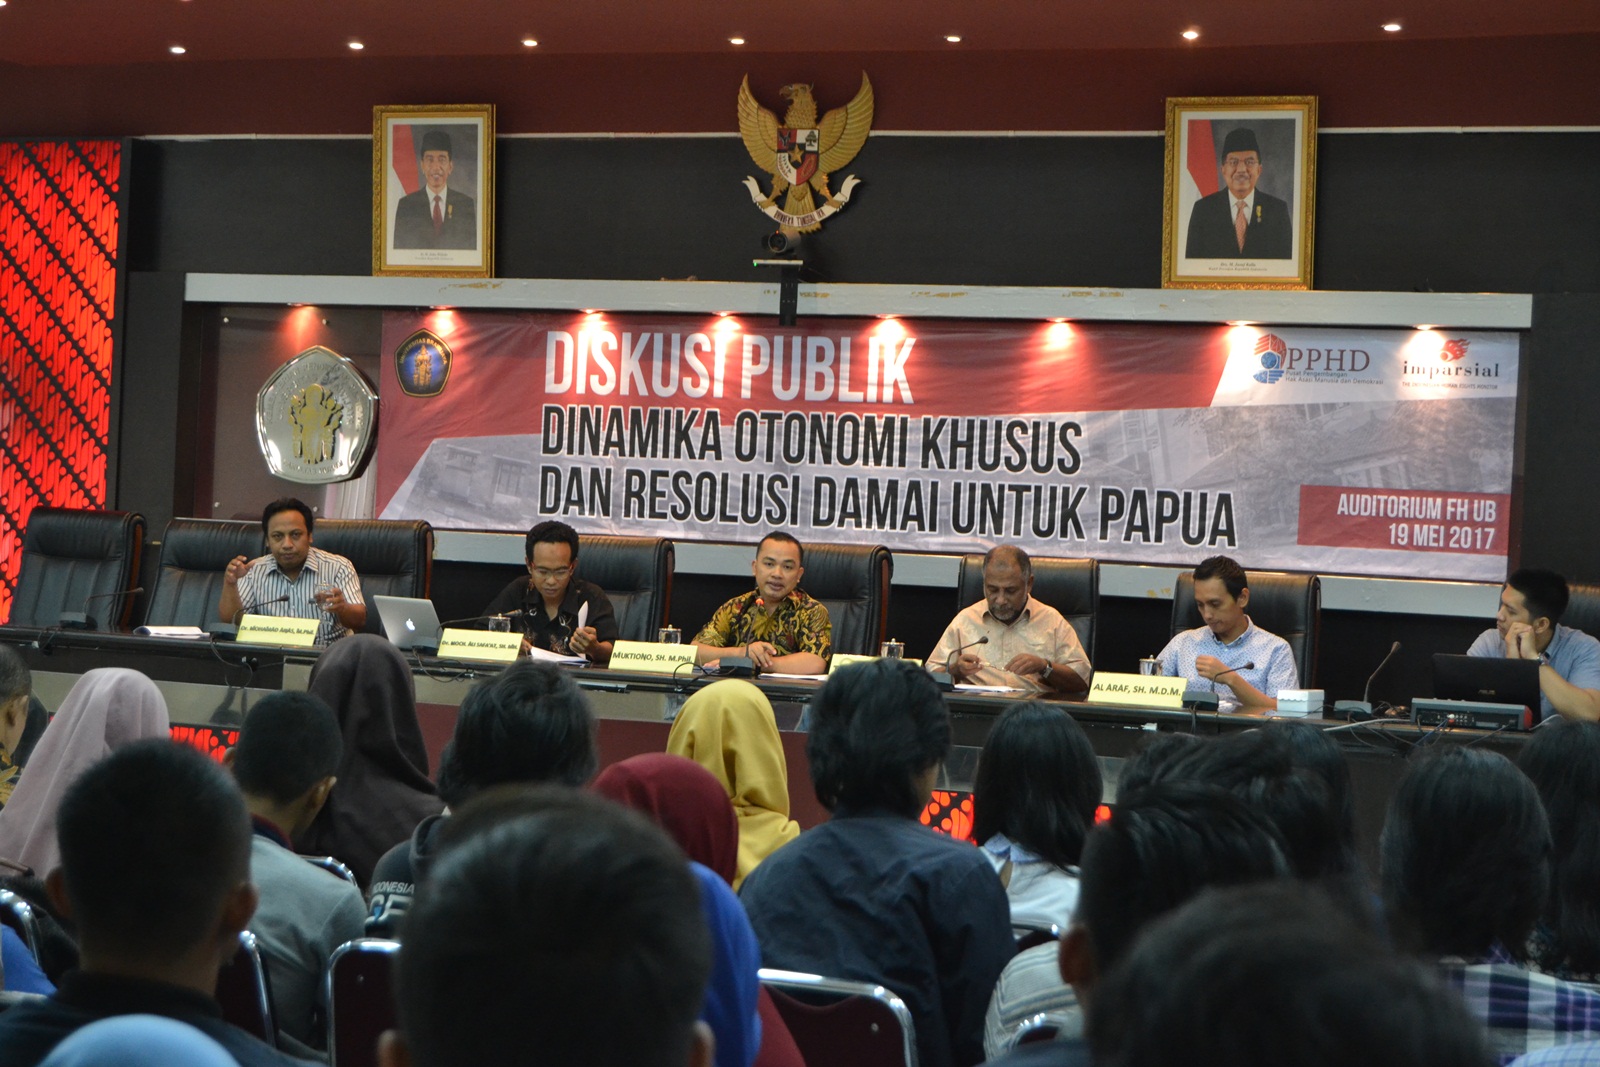 You are currently viewing Diskusi Publik Dinamika Otonomi Khusus dan Resolusi Damai Untuk Papua